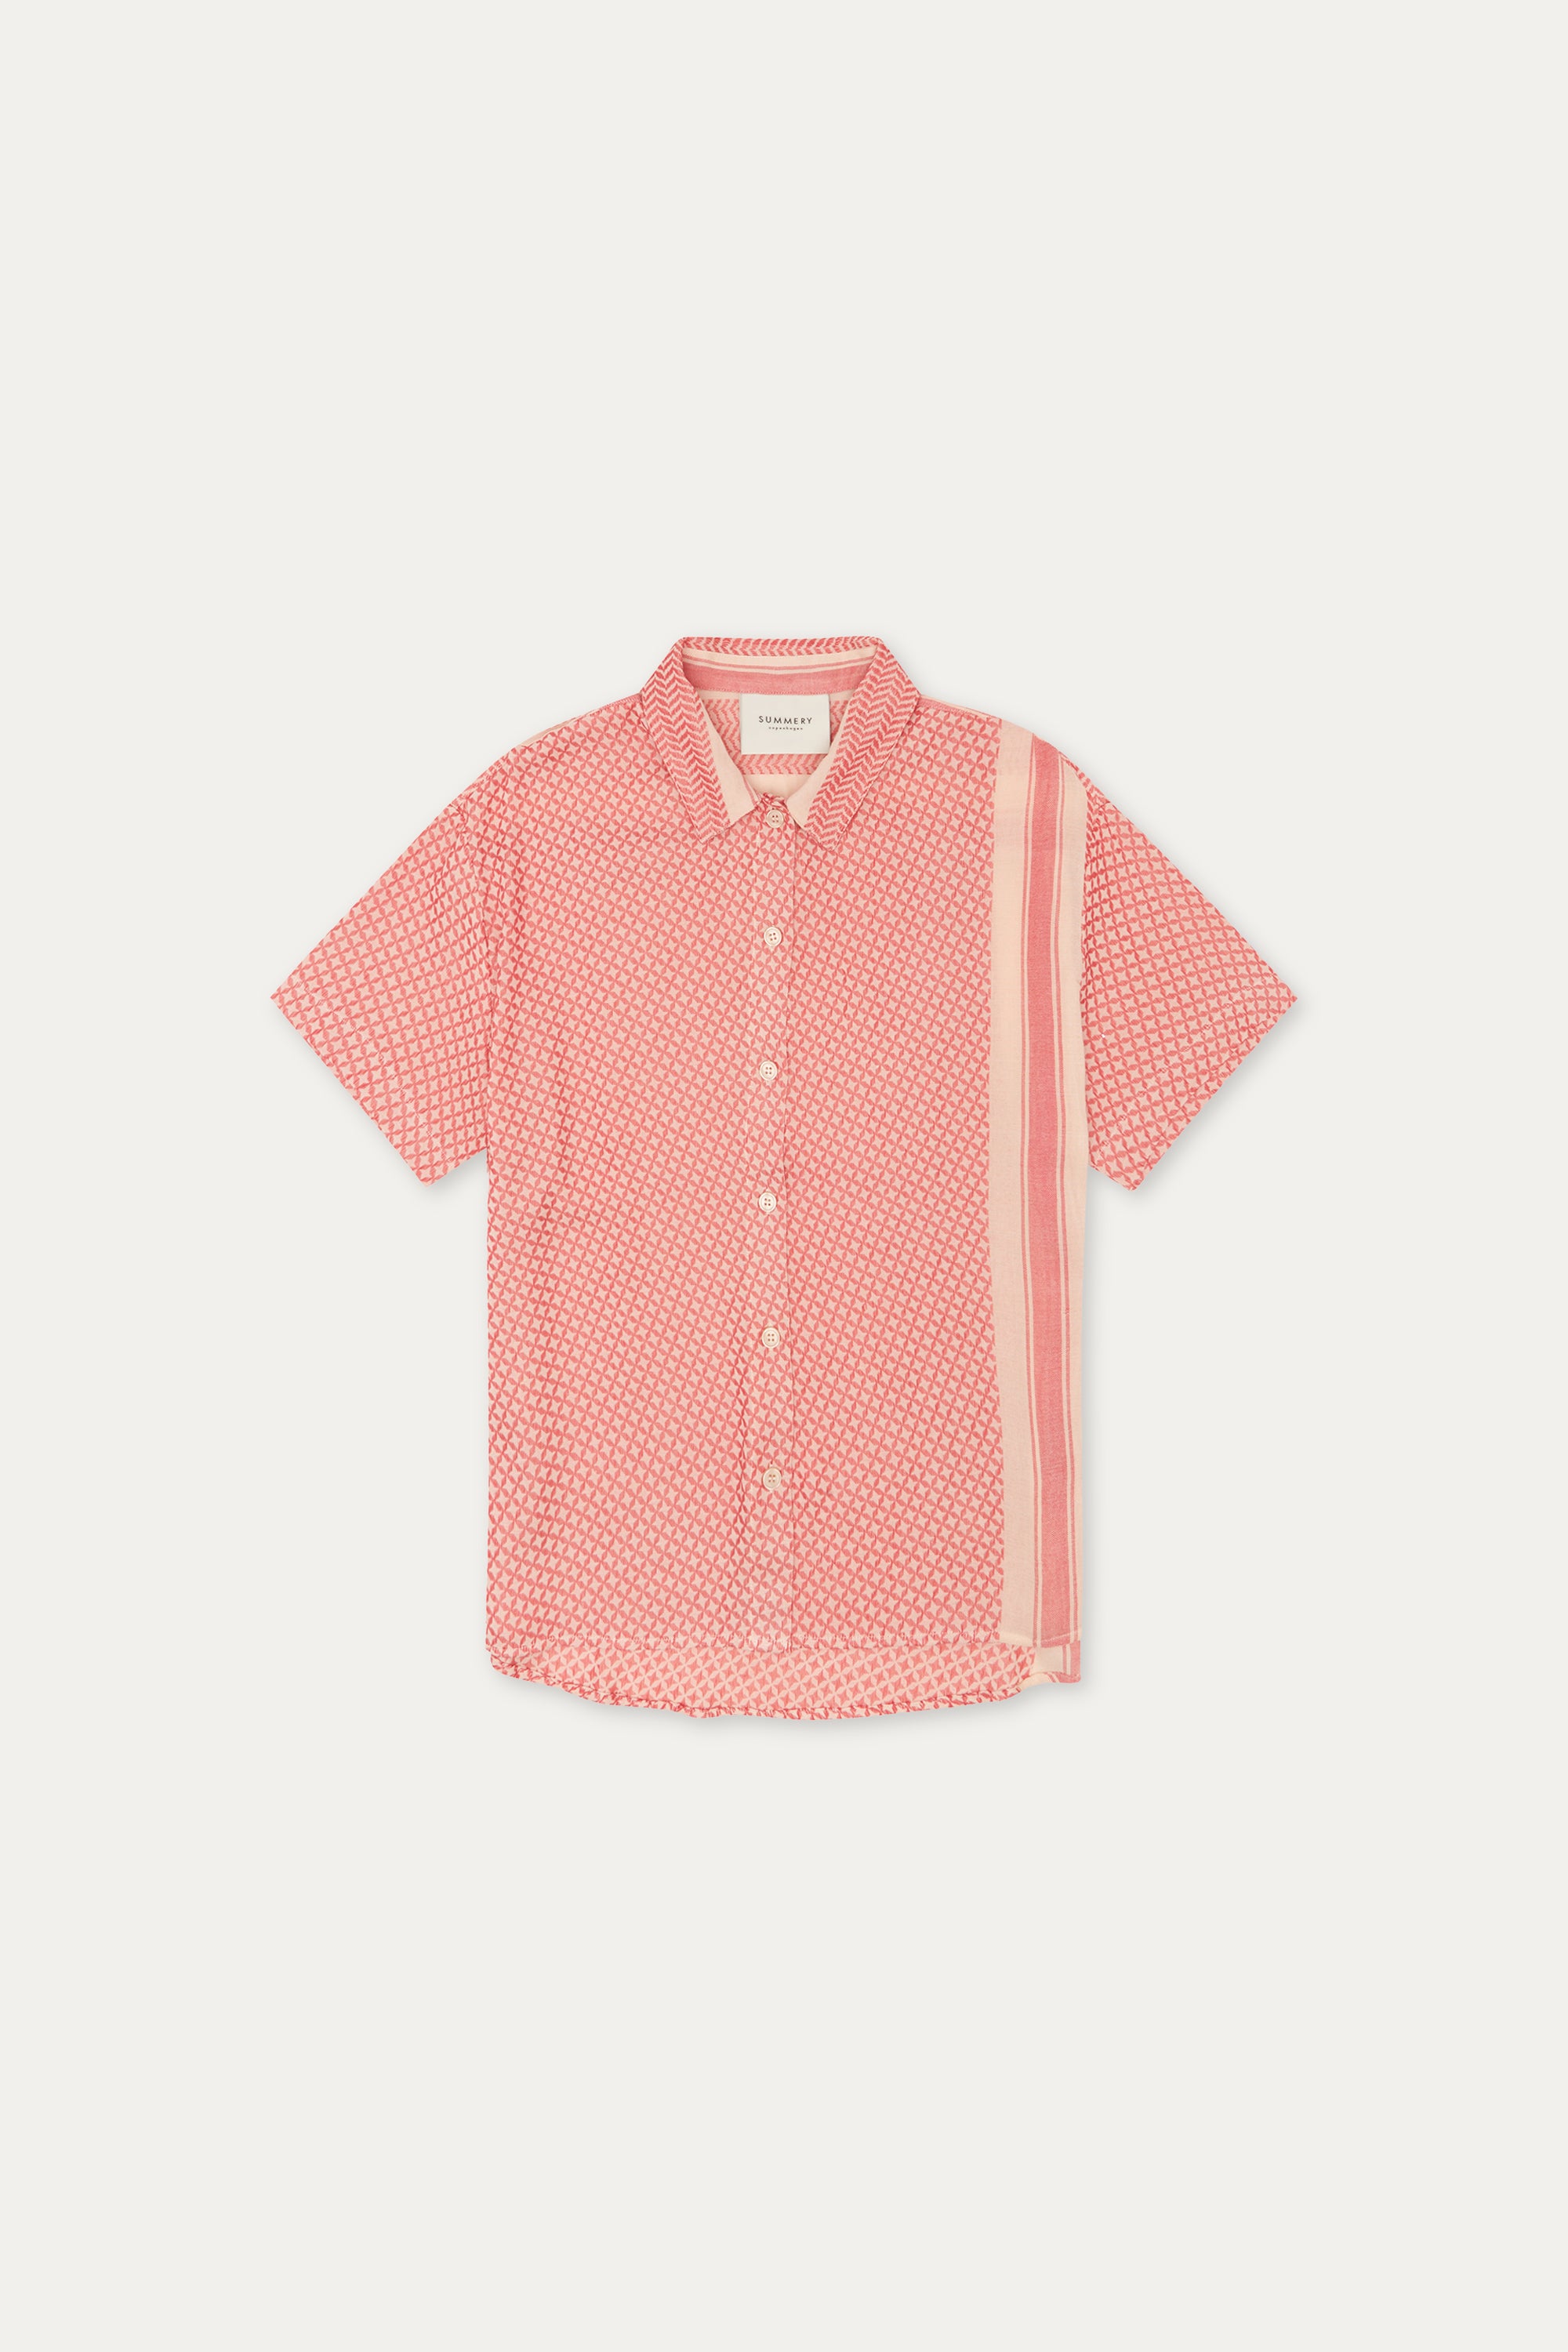 SUMMERY Copenhagen Alina Shirt  505 Soft Pink